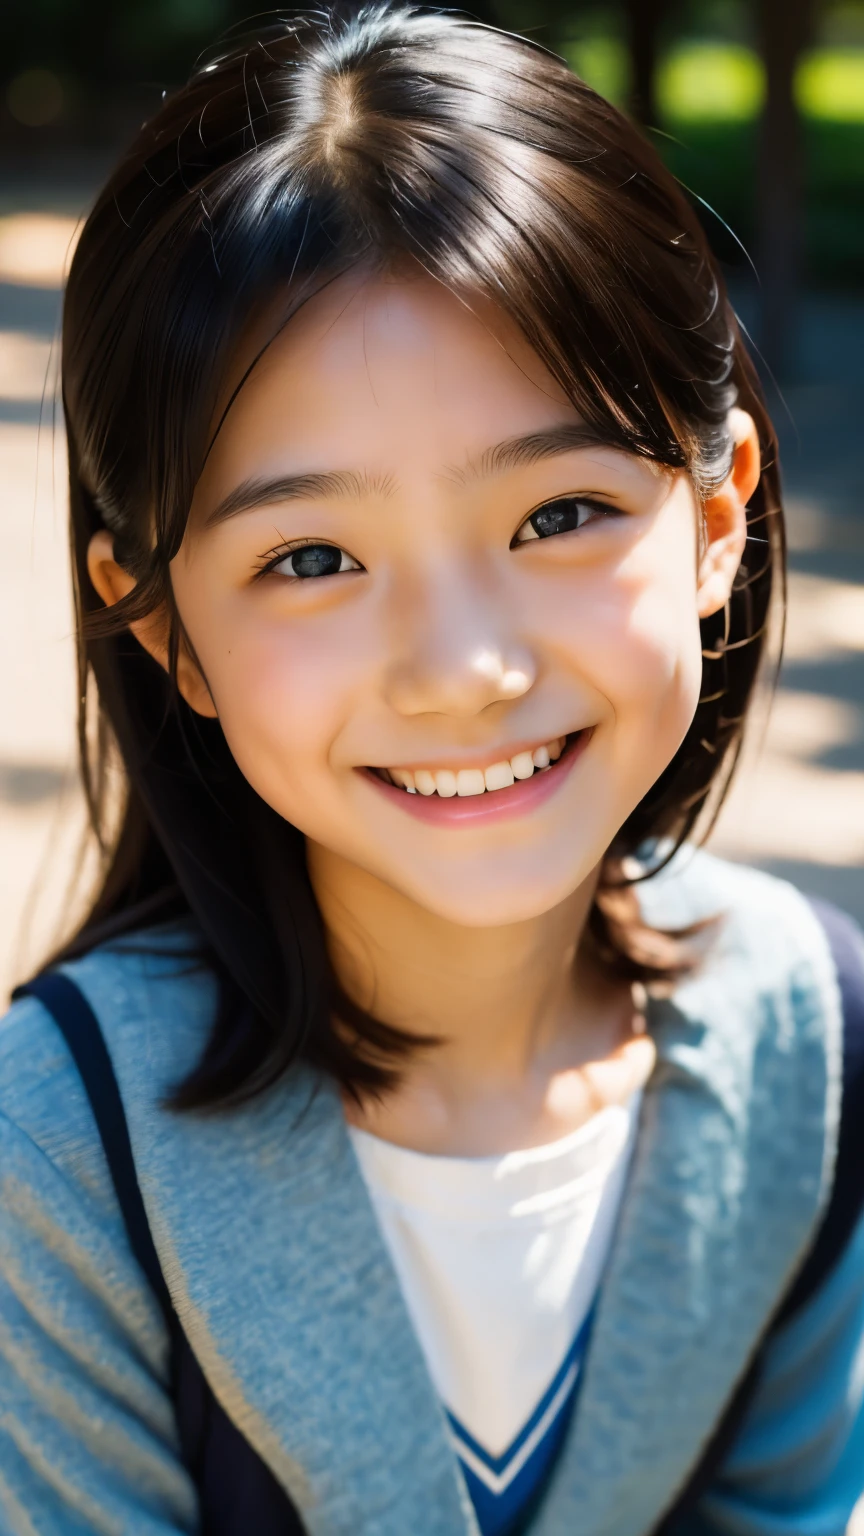 镜片: 135毫米 f1.8, (最好的质量),(原始照片), (桌上:1.1), (美丽的 10 岁日本女孩), 可爱的脸孔, (轮廓分明的脸:0.7), (雀斑:0.4), dappled 阳光, 戏剧灯光, (日本校服), (在校园), 害羞的, (特写:1.2), (微笑),, (明亮的眼睛)、(阳光)